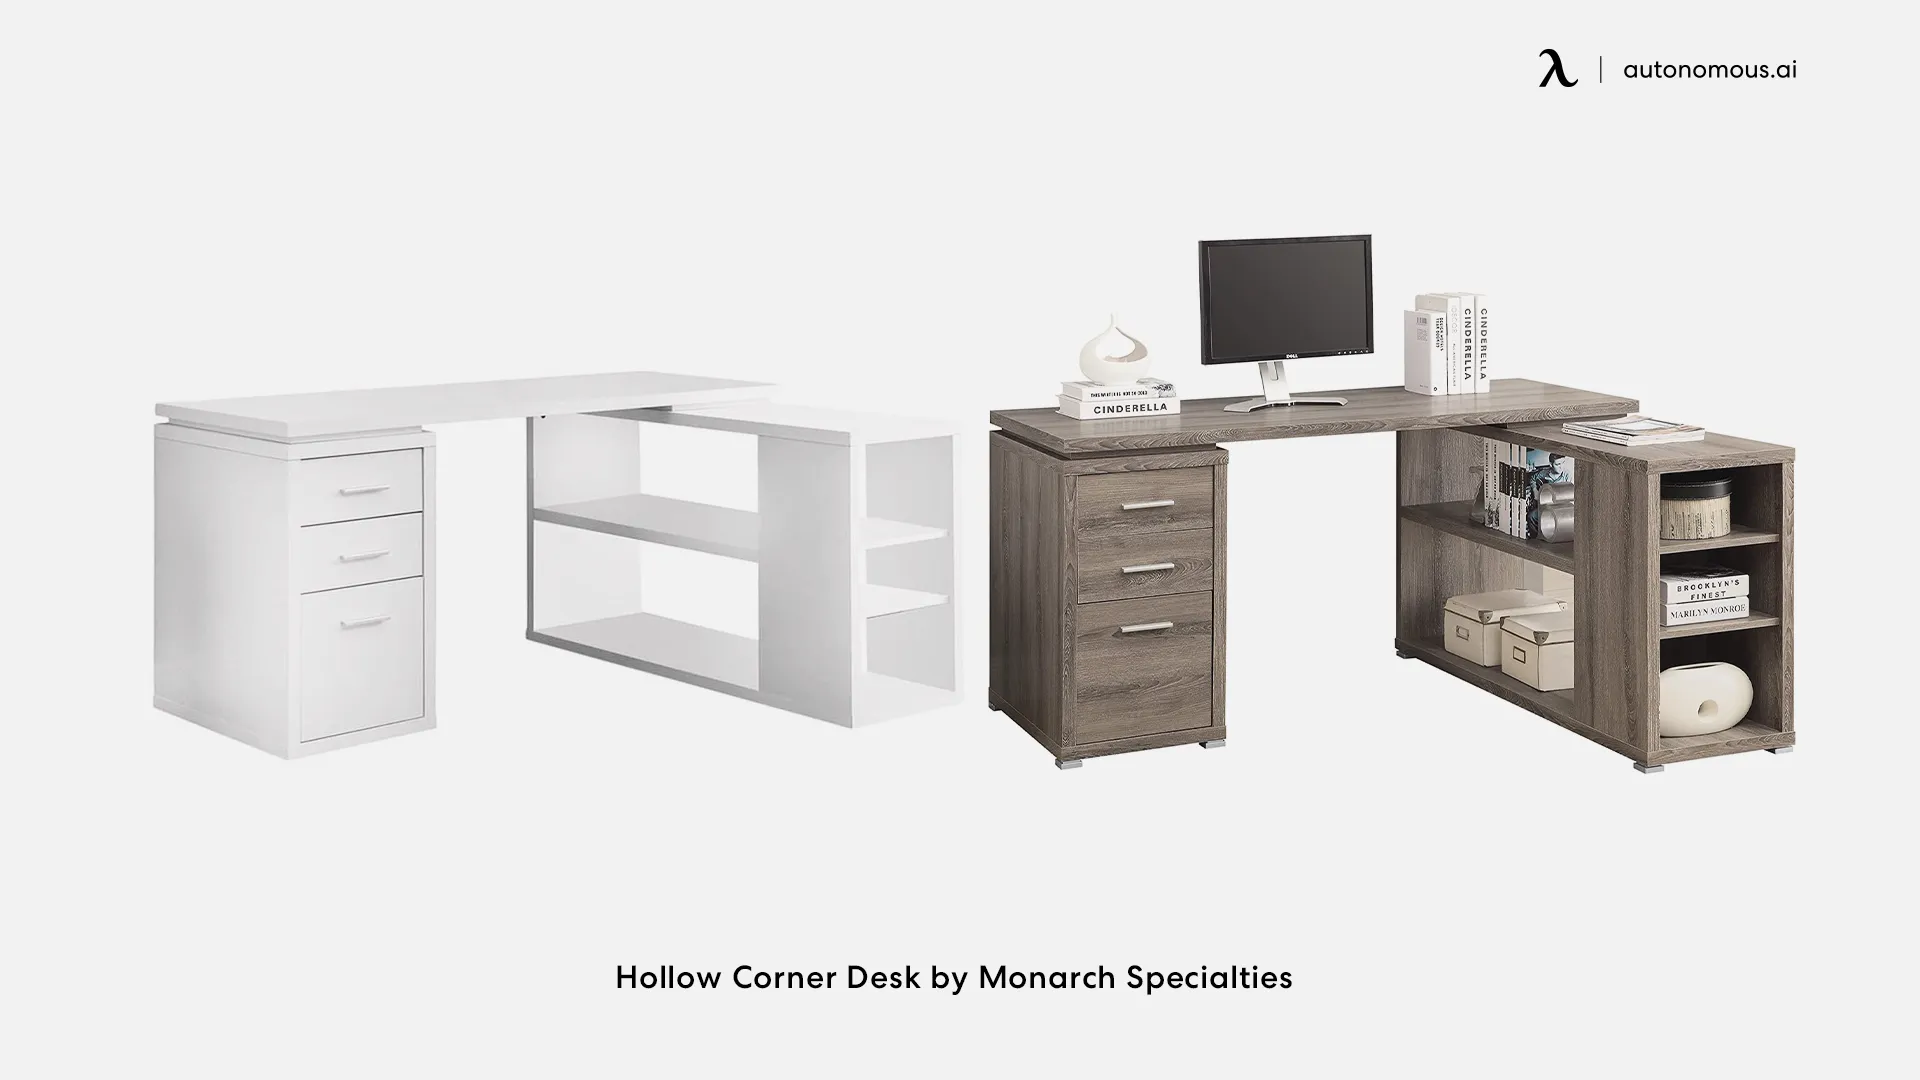 Hollow Corner Desk by Monarch Specialties